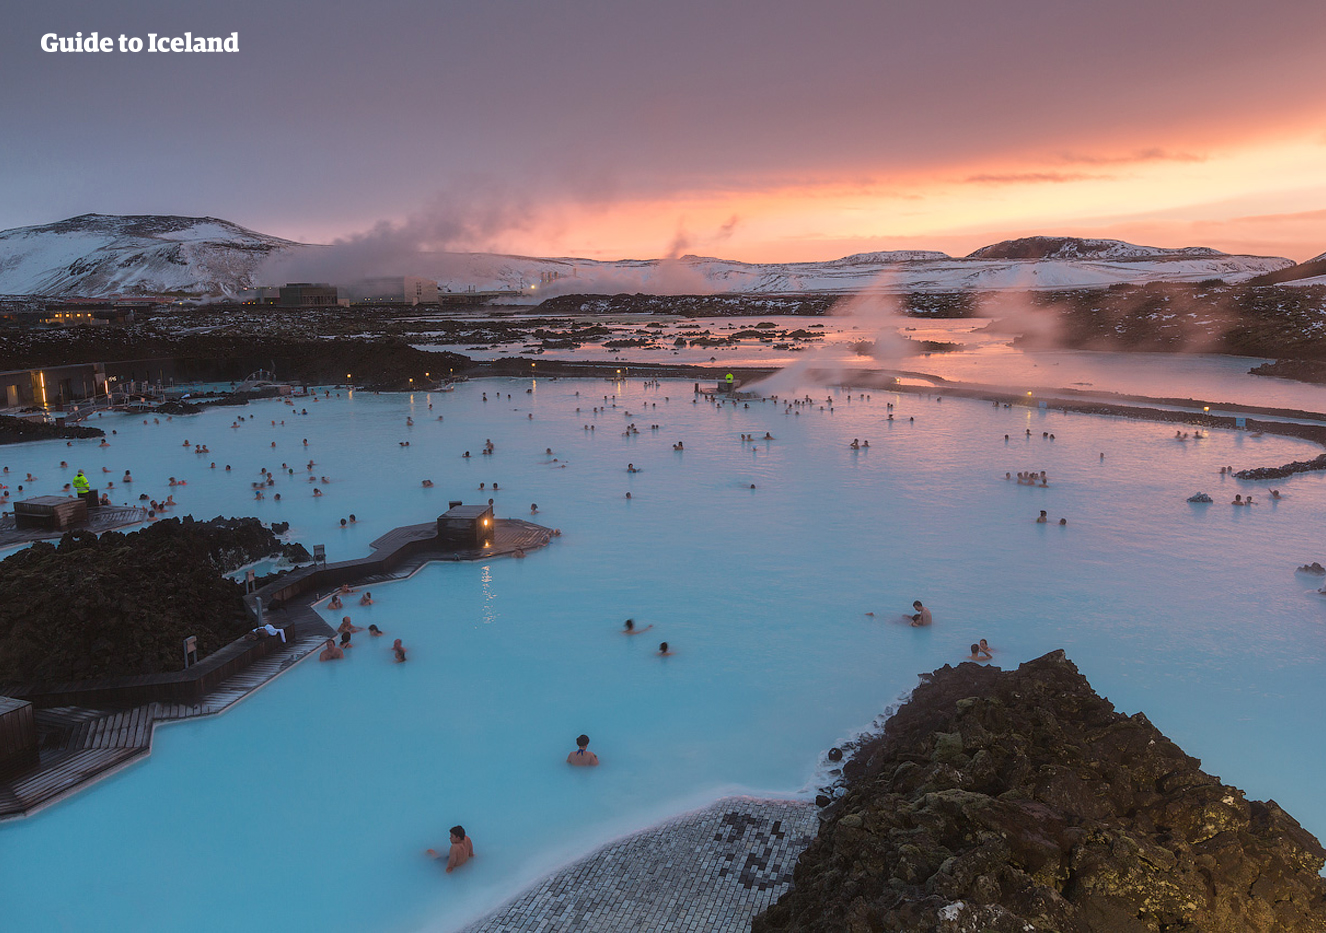 아이슬란드 출국 전 규소와 미네랄이 풍부한 블루라군 온천수에 몸을 담그고 여행의 피로를 푸는 것은 어떠신가요?